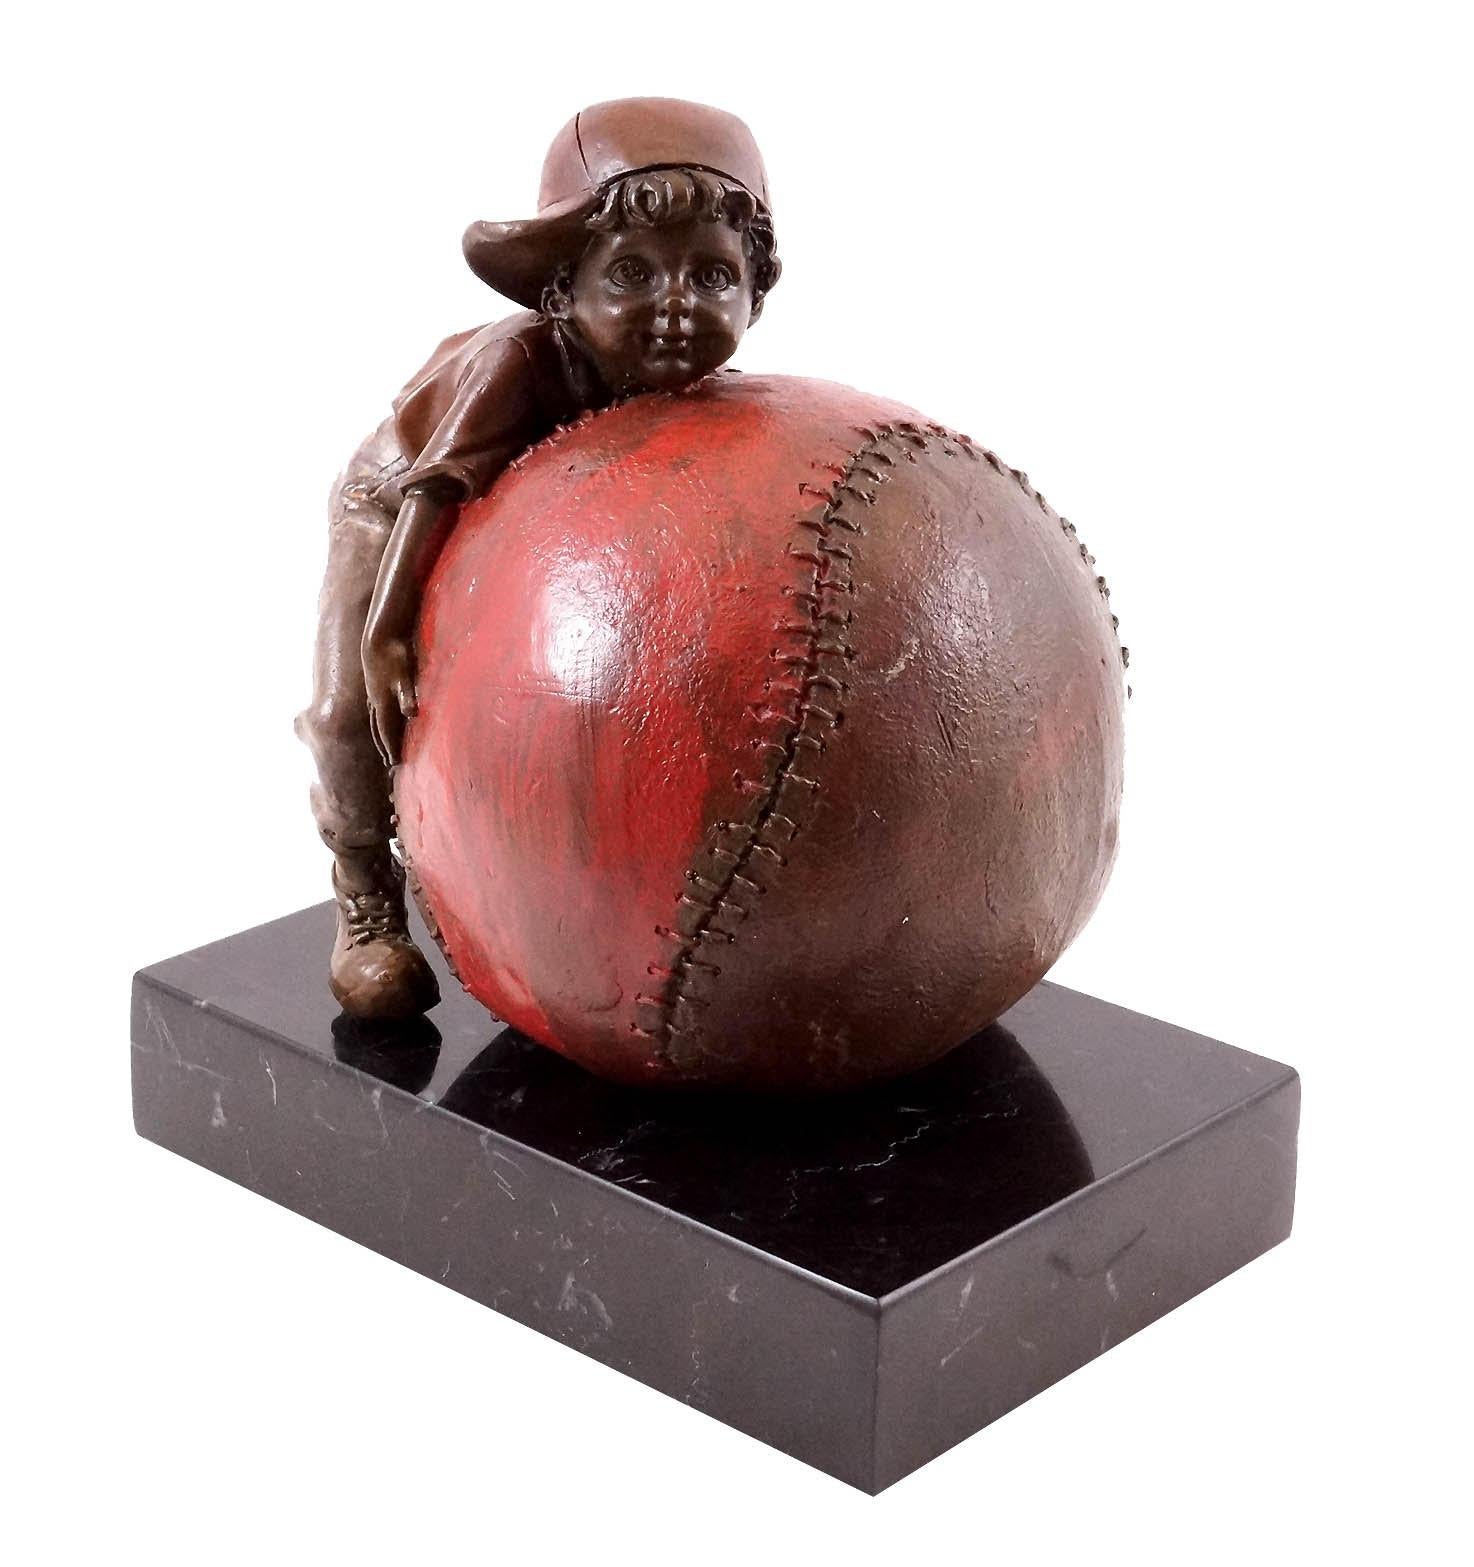 Bronzeskulptur, die ein Kind und die Freude am Baseball darstellt, 20. Jahrhundert.

Bronzeskulptur, die ein Kind und die Freude am Baseball darstellt, 20. Jahrhundert.
H: 19cm, B: 16cm, T: 10cm